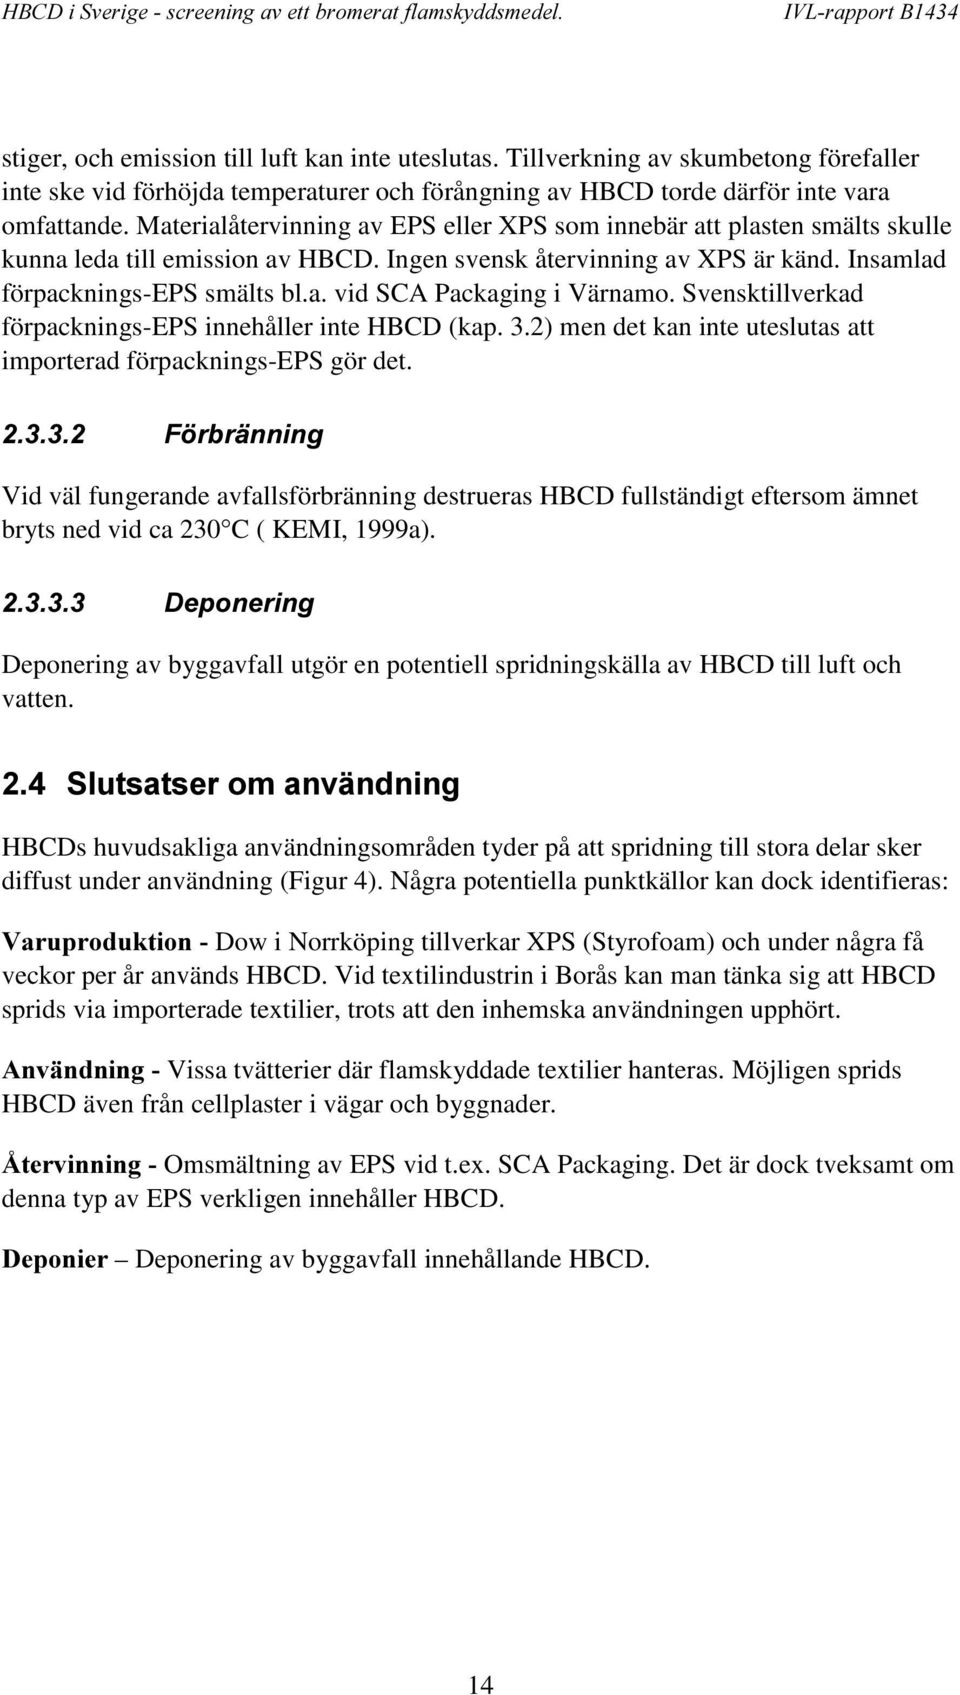 Svensktillverkad förpacknings-eps innehåller inte HBCD (kap. 3.2) men det kan inte uteslutas att importerad förpacknings-eps gör det.